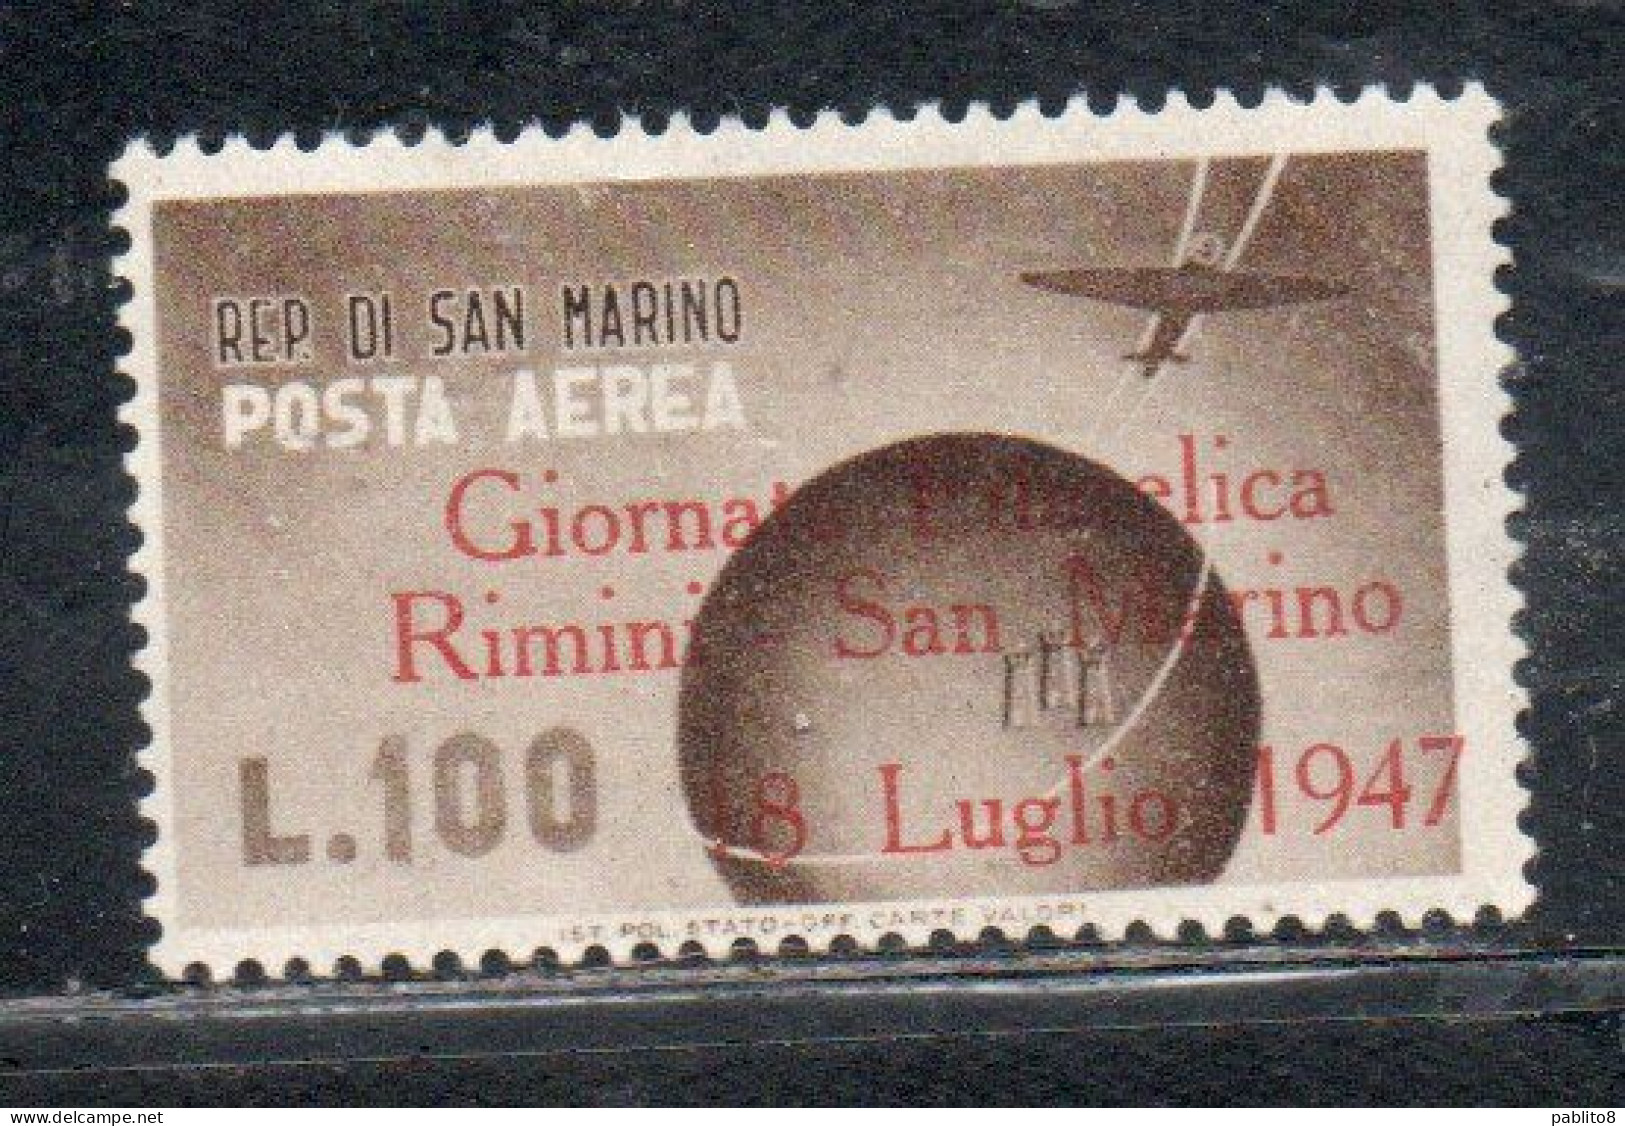 REPUBBLICA DI SAN MARINO 1947 POSTA AEREA AIR MAIL GIORNATA FILATELICA RIMINI LIRE 100 MNH - Luftpost